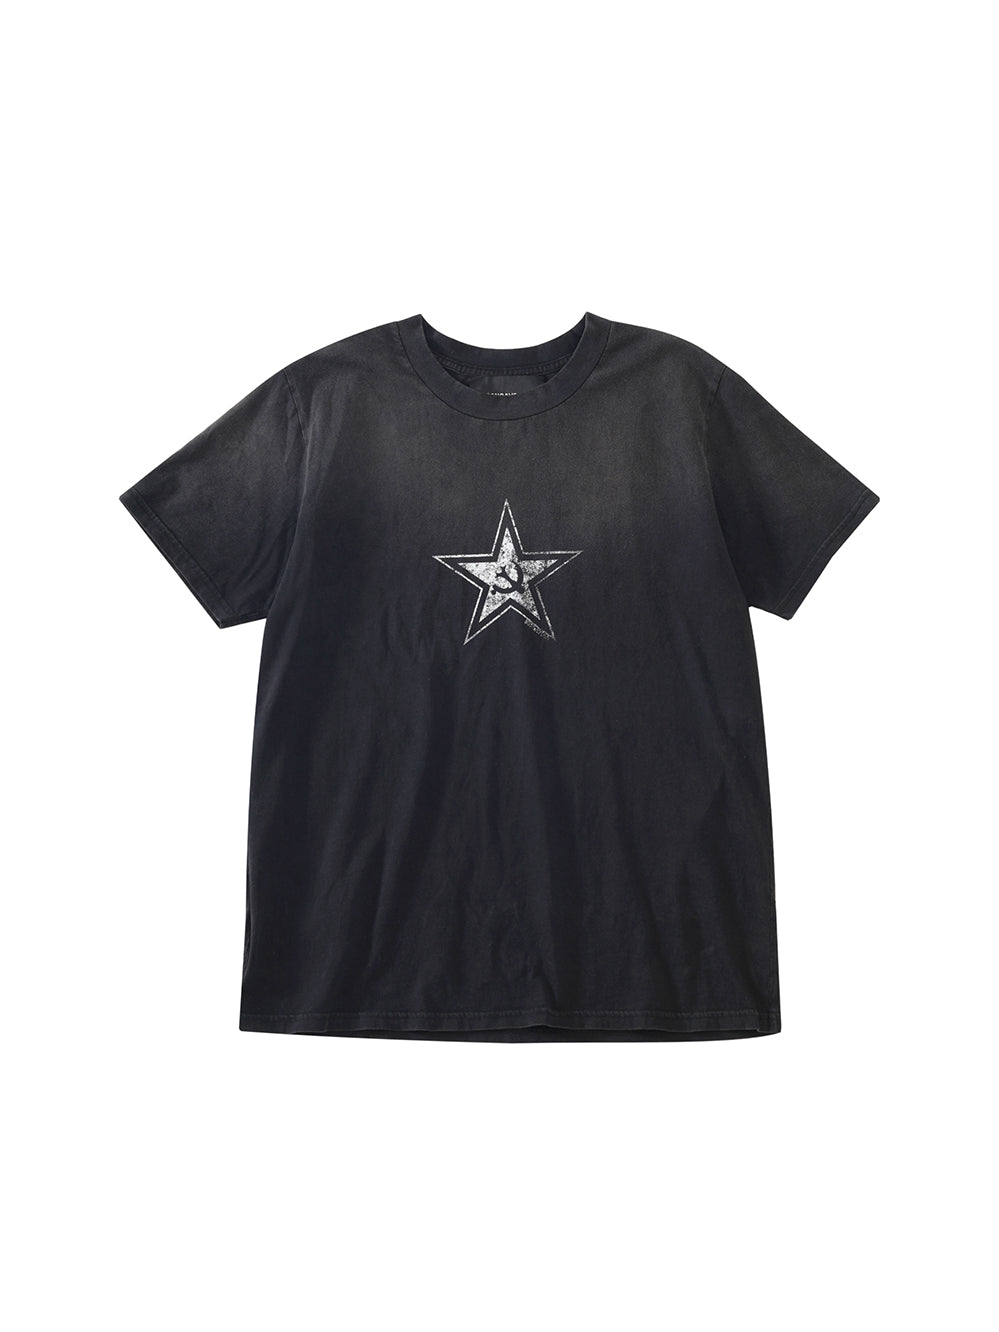 Star print distressed T-shirt